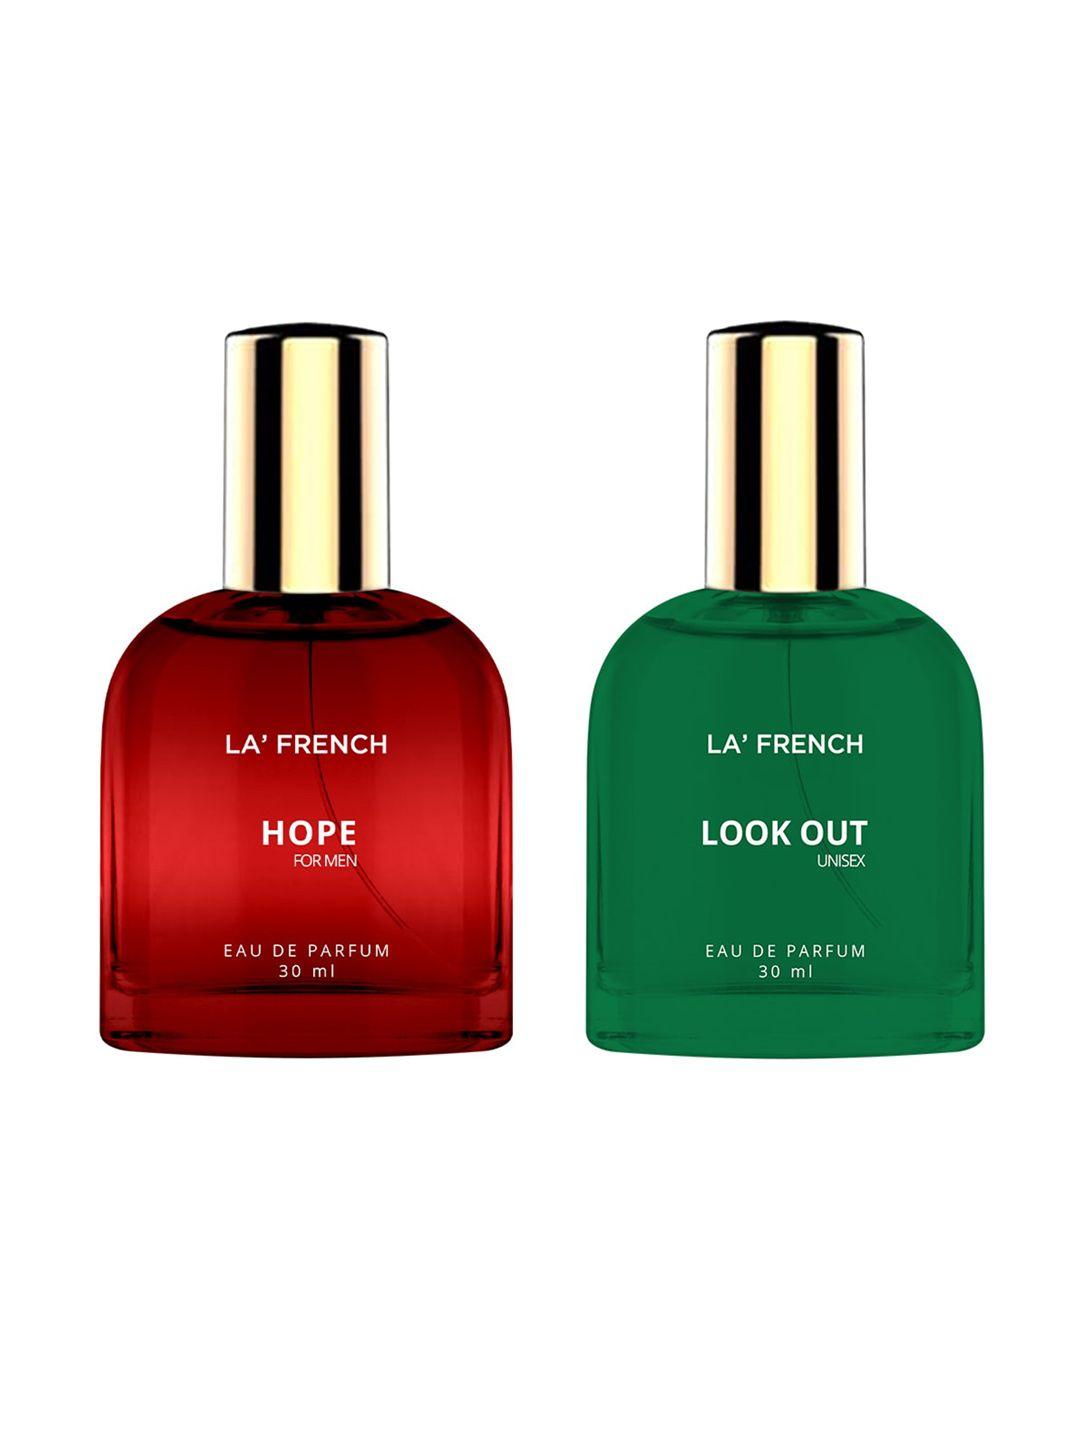 la french set of 2 hope & look out eau de parfum - 30ml each